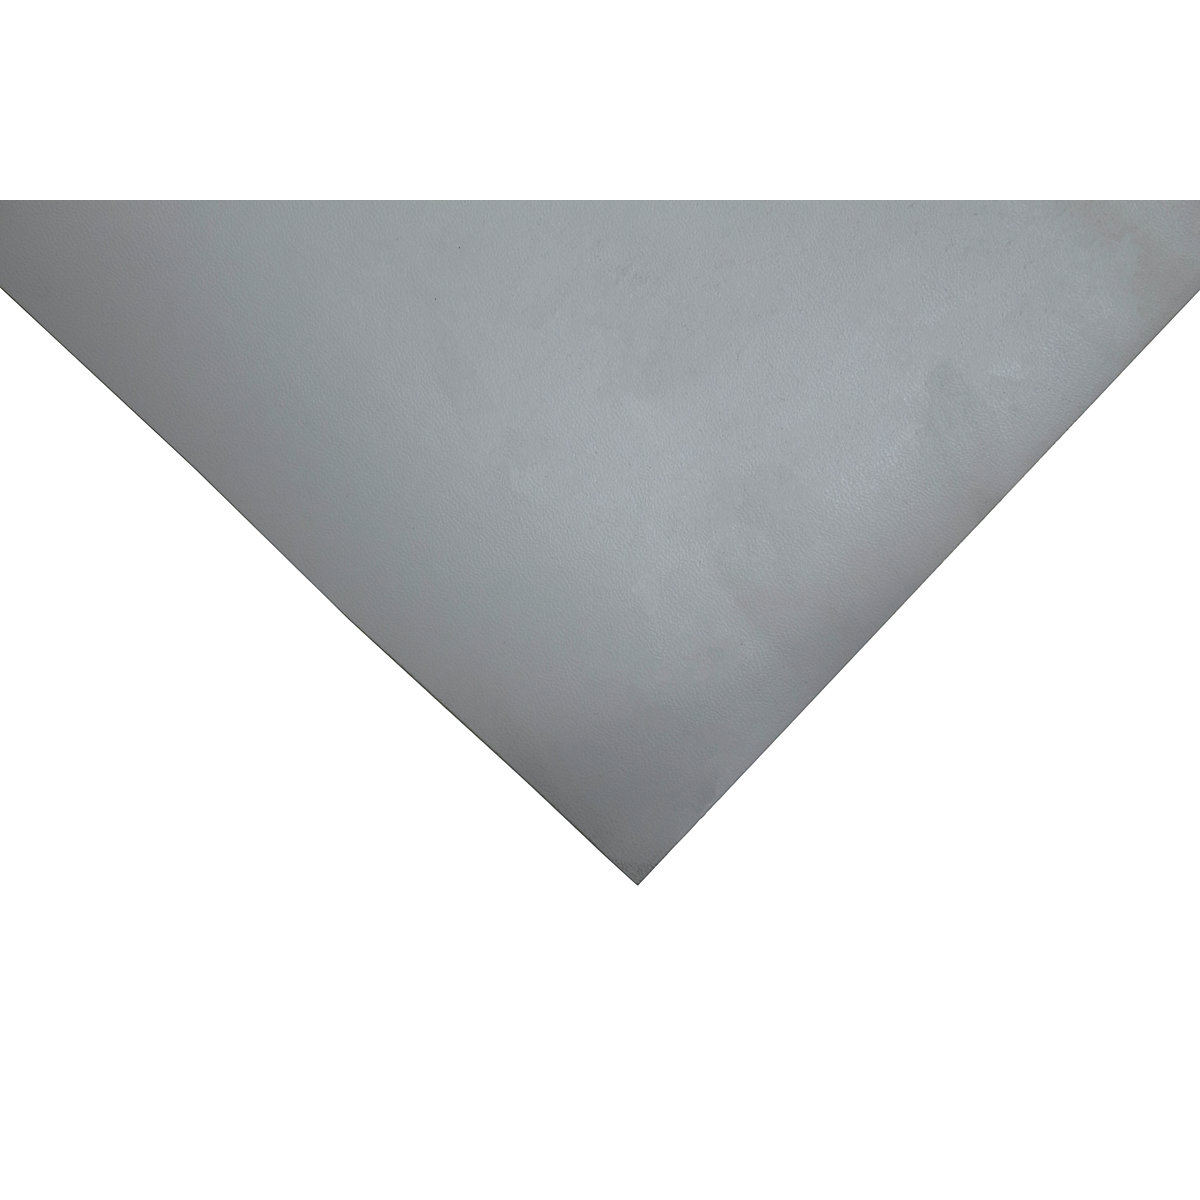 Tapis de table antistatique HR-Matting, L x l 1200 x 600 mm, gris